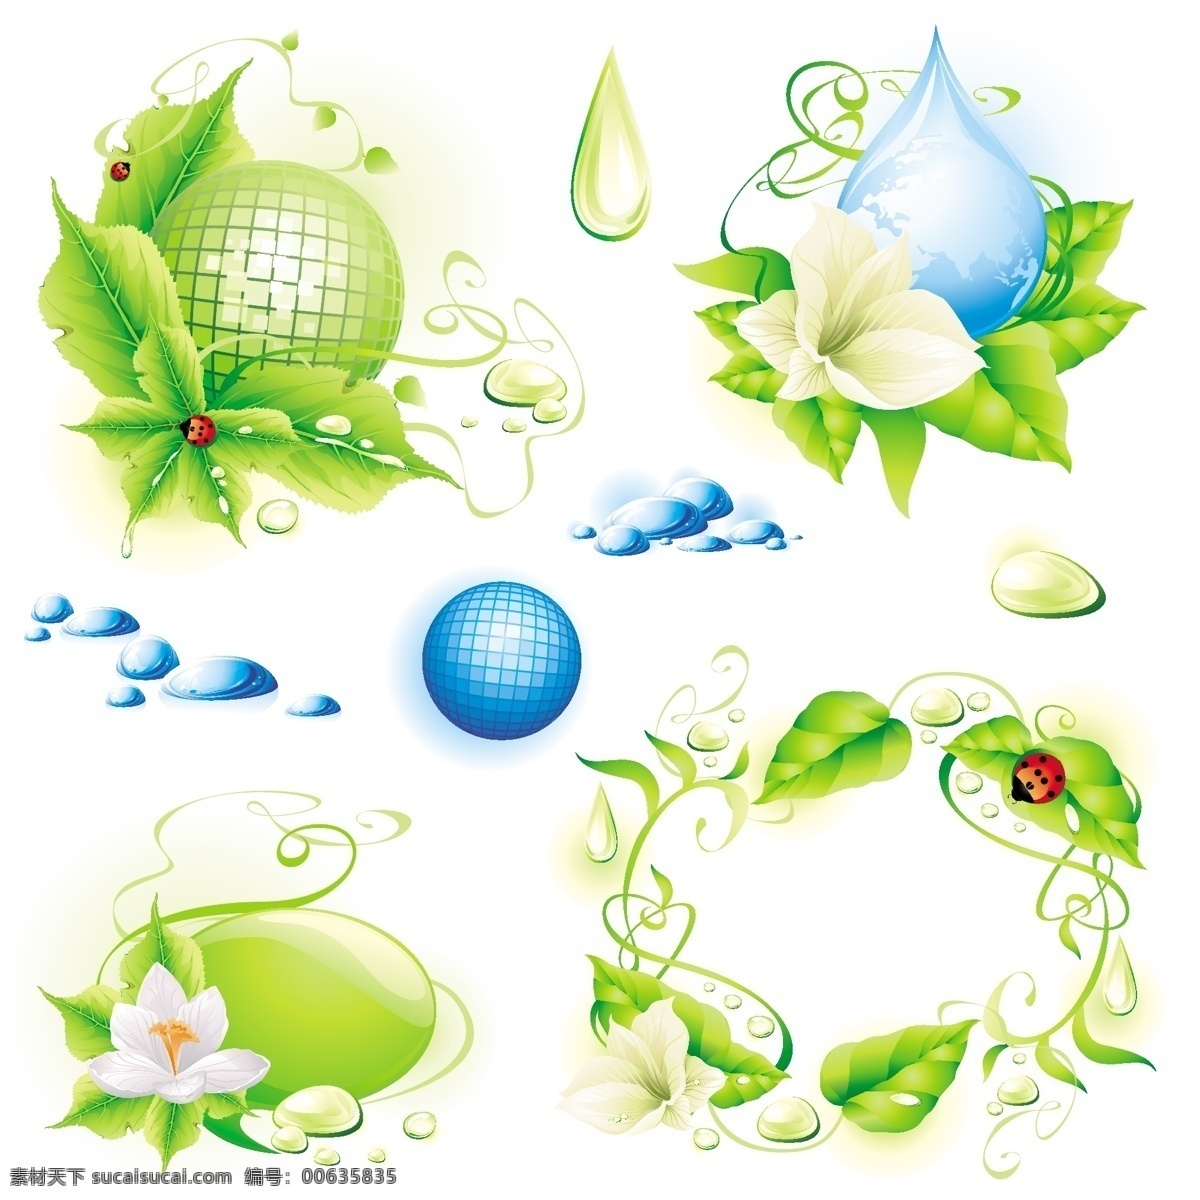 矢量 环保 元素 地球 花朵 昆虫 绿色 绿叶 七星瓢虫 矢量素材 水滴 题材 枝蔓